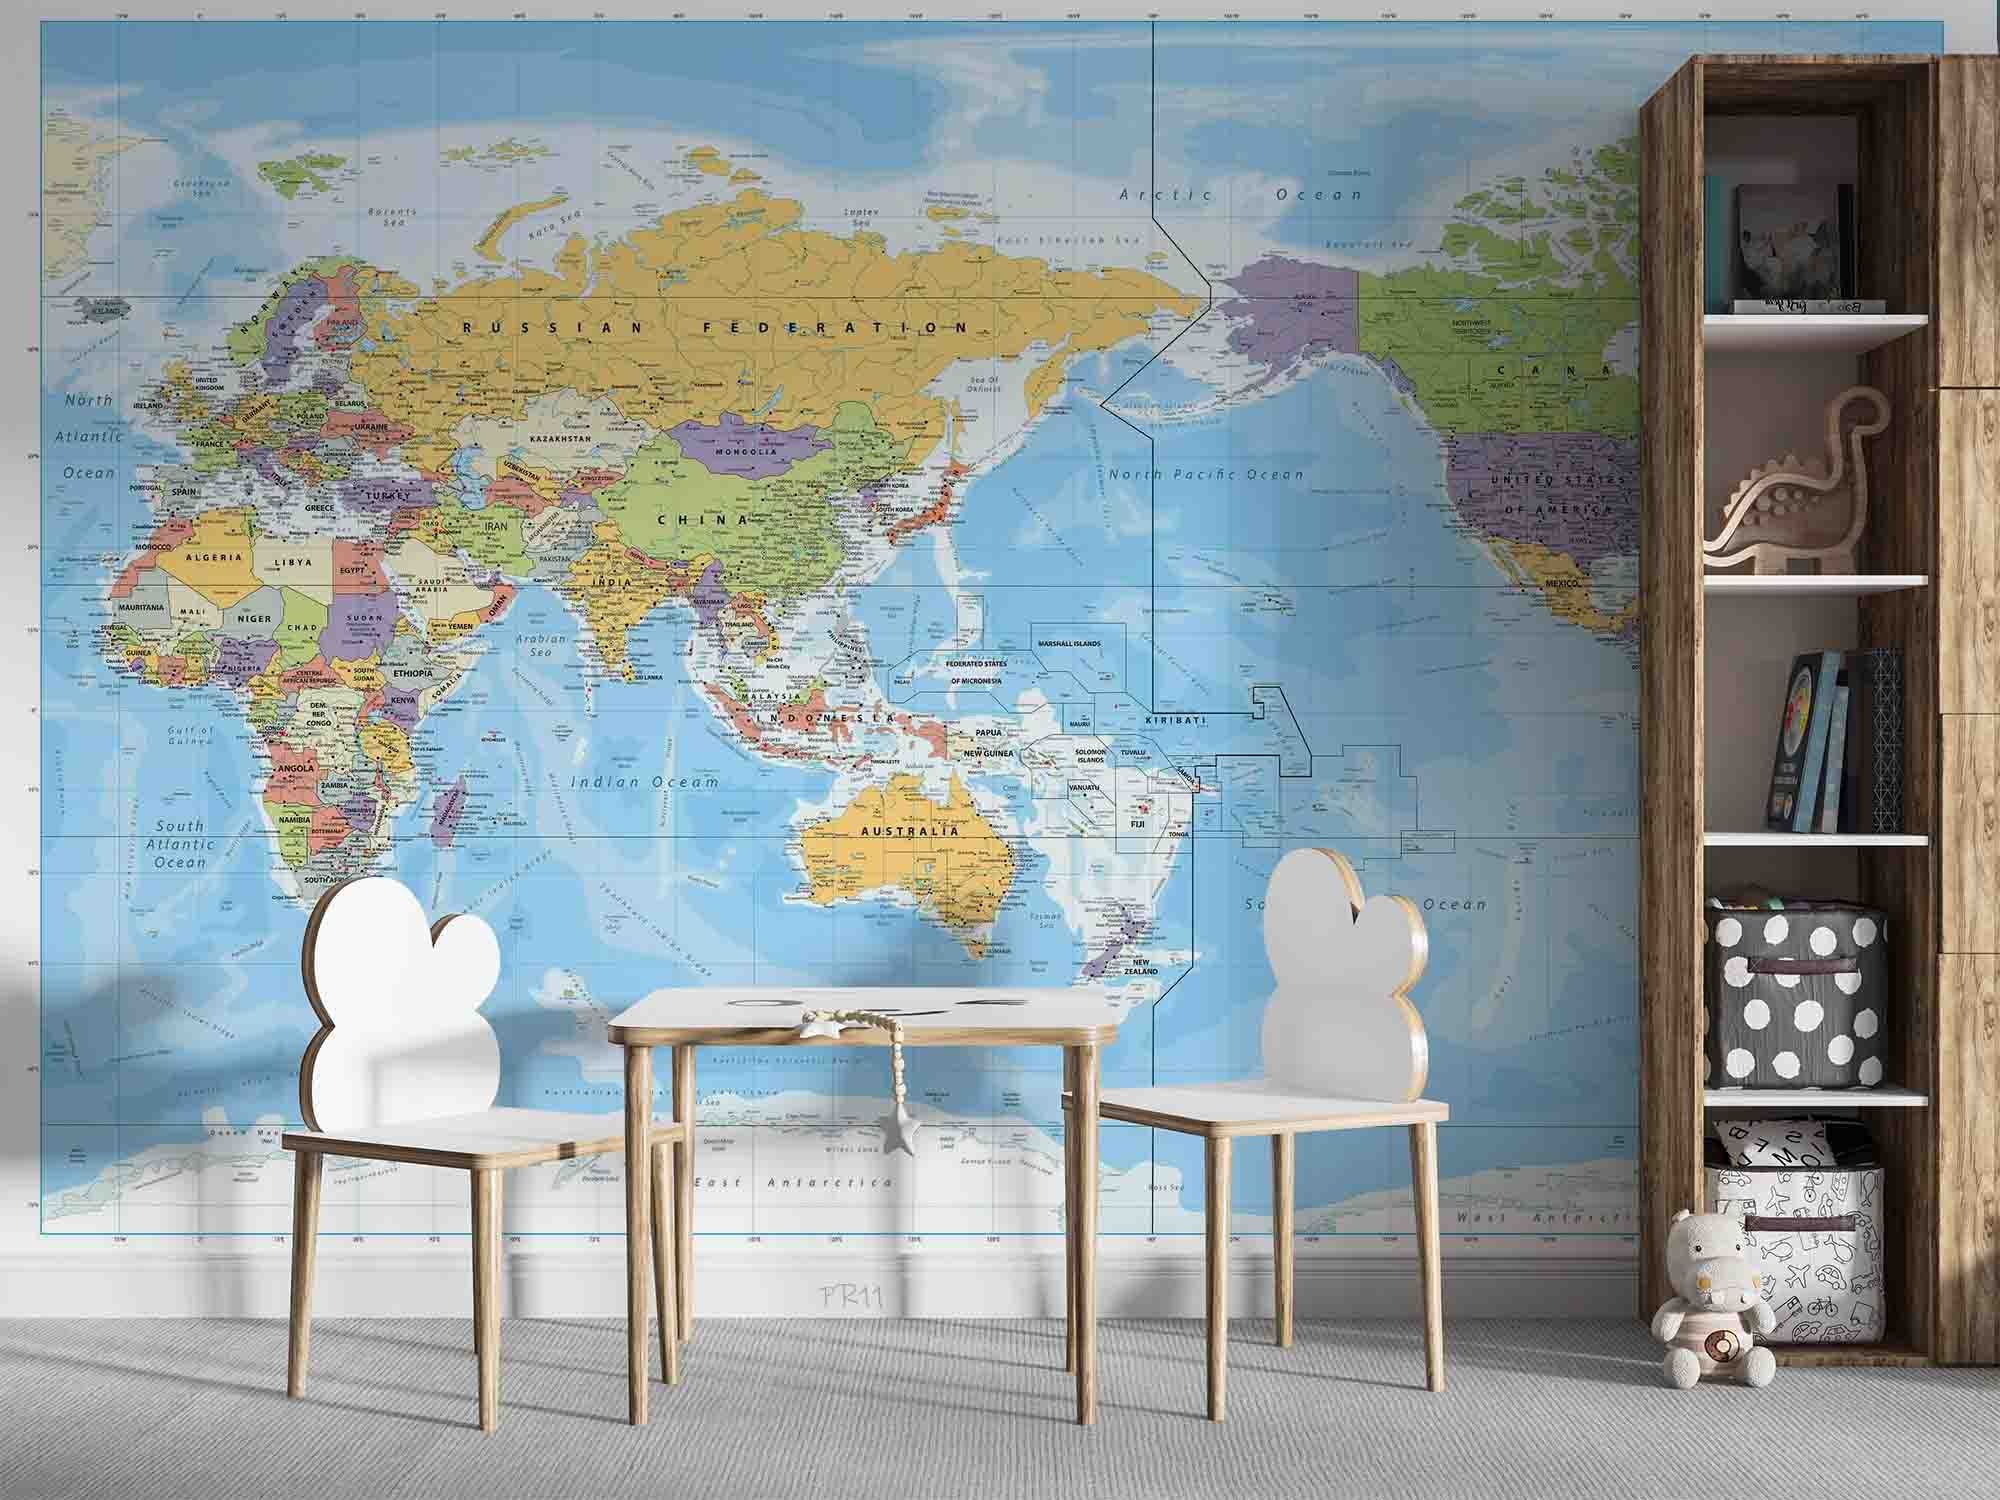 3D Detailed World Map Wall Mural Wallpaper GD 4927- Jess Art Decoration